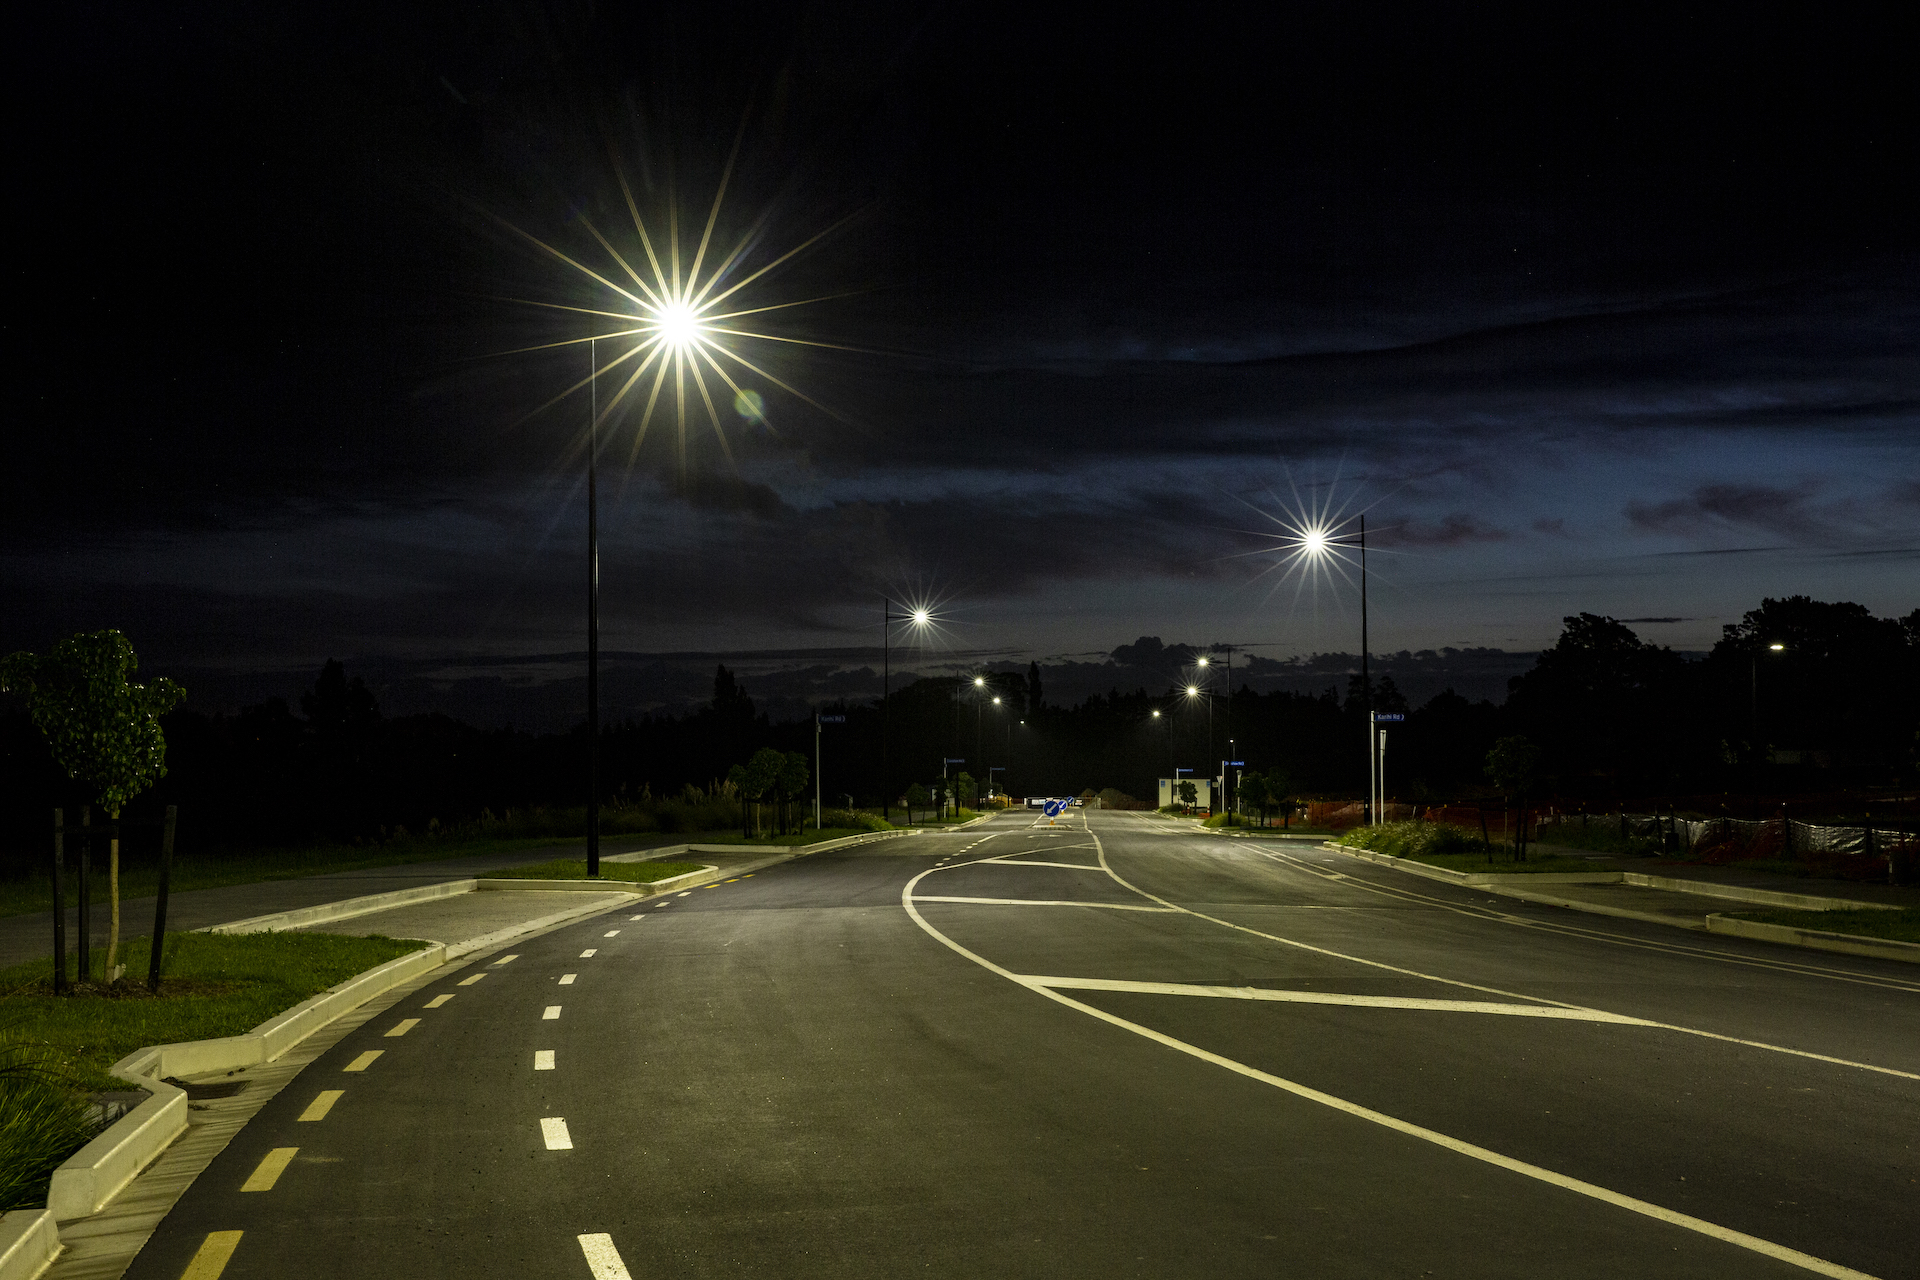 Auranga road at night, illuminated by ibex lighting.